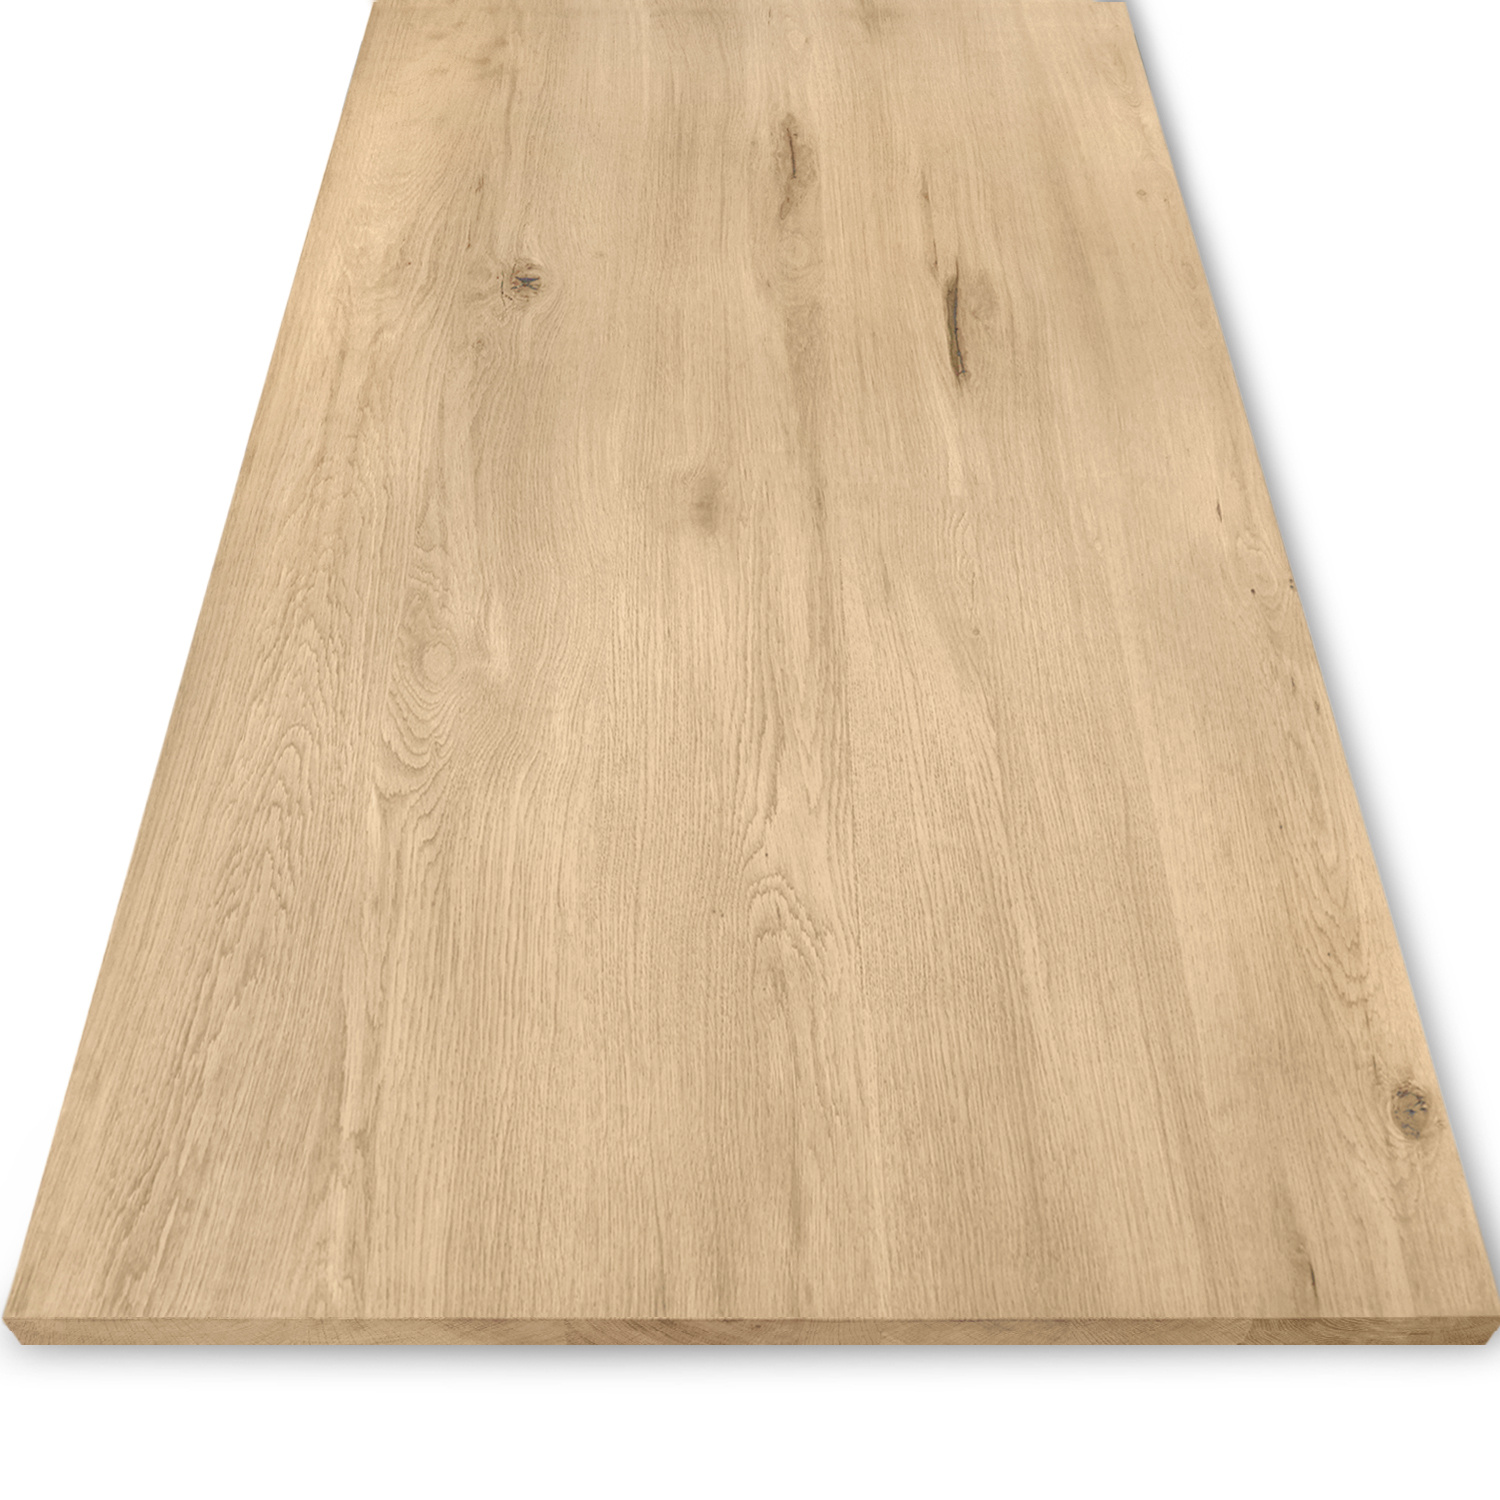  Eiken tafelblad - 2,5 cm dik (1-laag) - Diverse afmetingen - extra rustiek Europees eikenhout - met extra brede lamellen (circa 14-20 cm) - verlijmd kd 8-12%